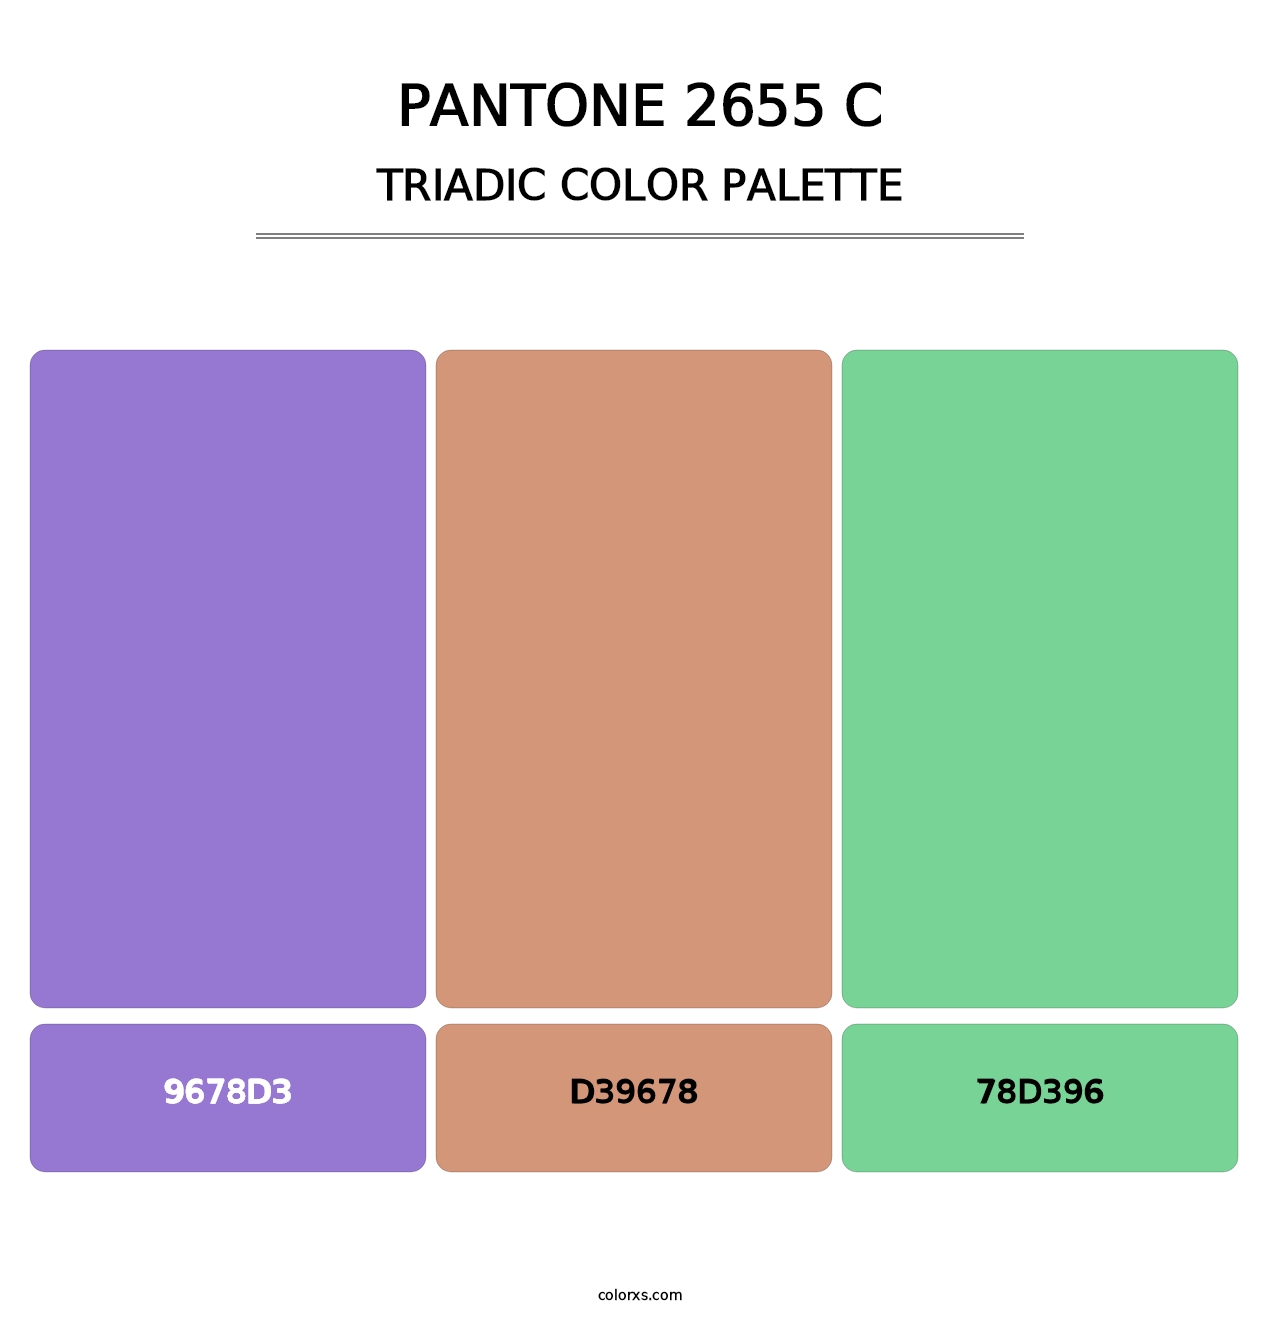 PANTONE 2655 C - Triadic Color Palette